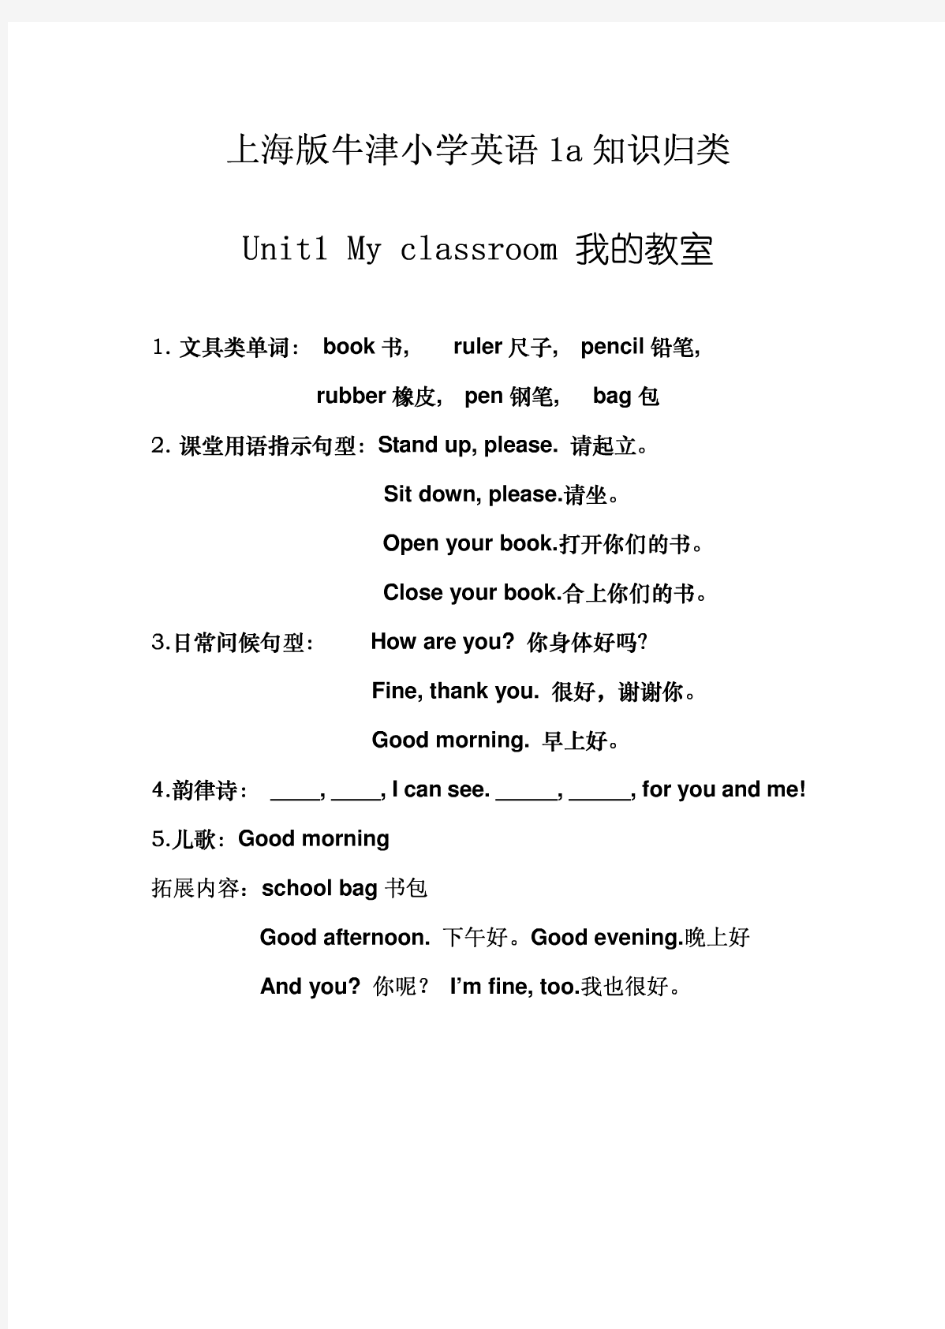 上海版牛津小学英语一年级1a知识归类